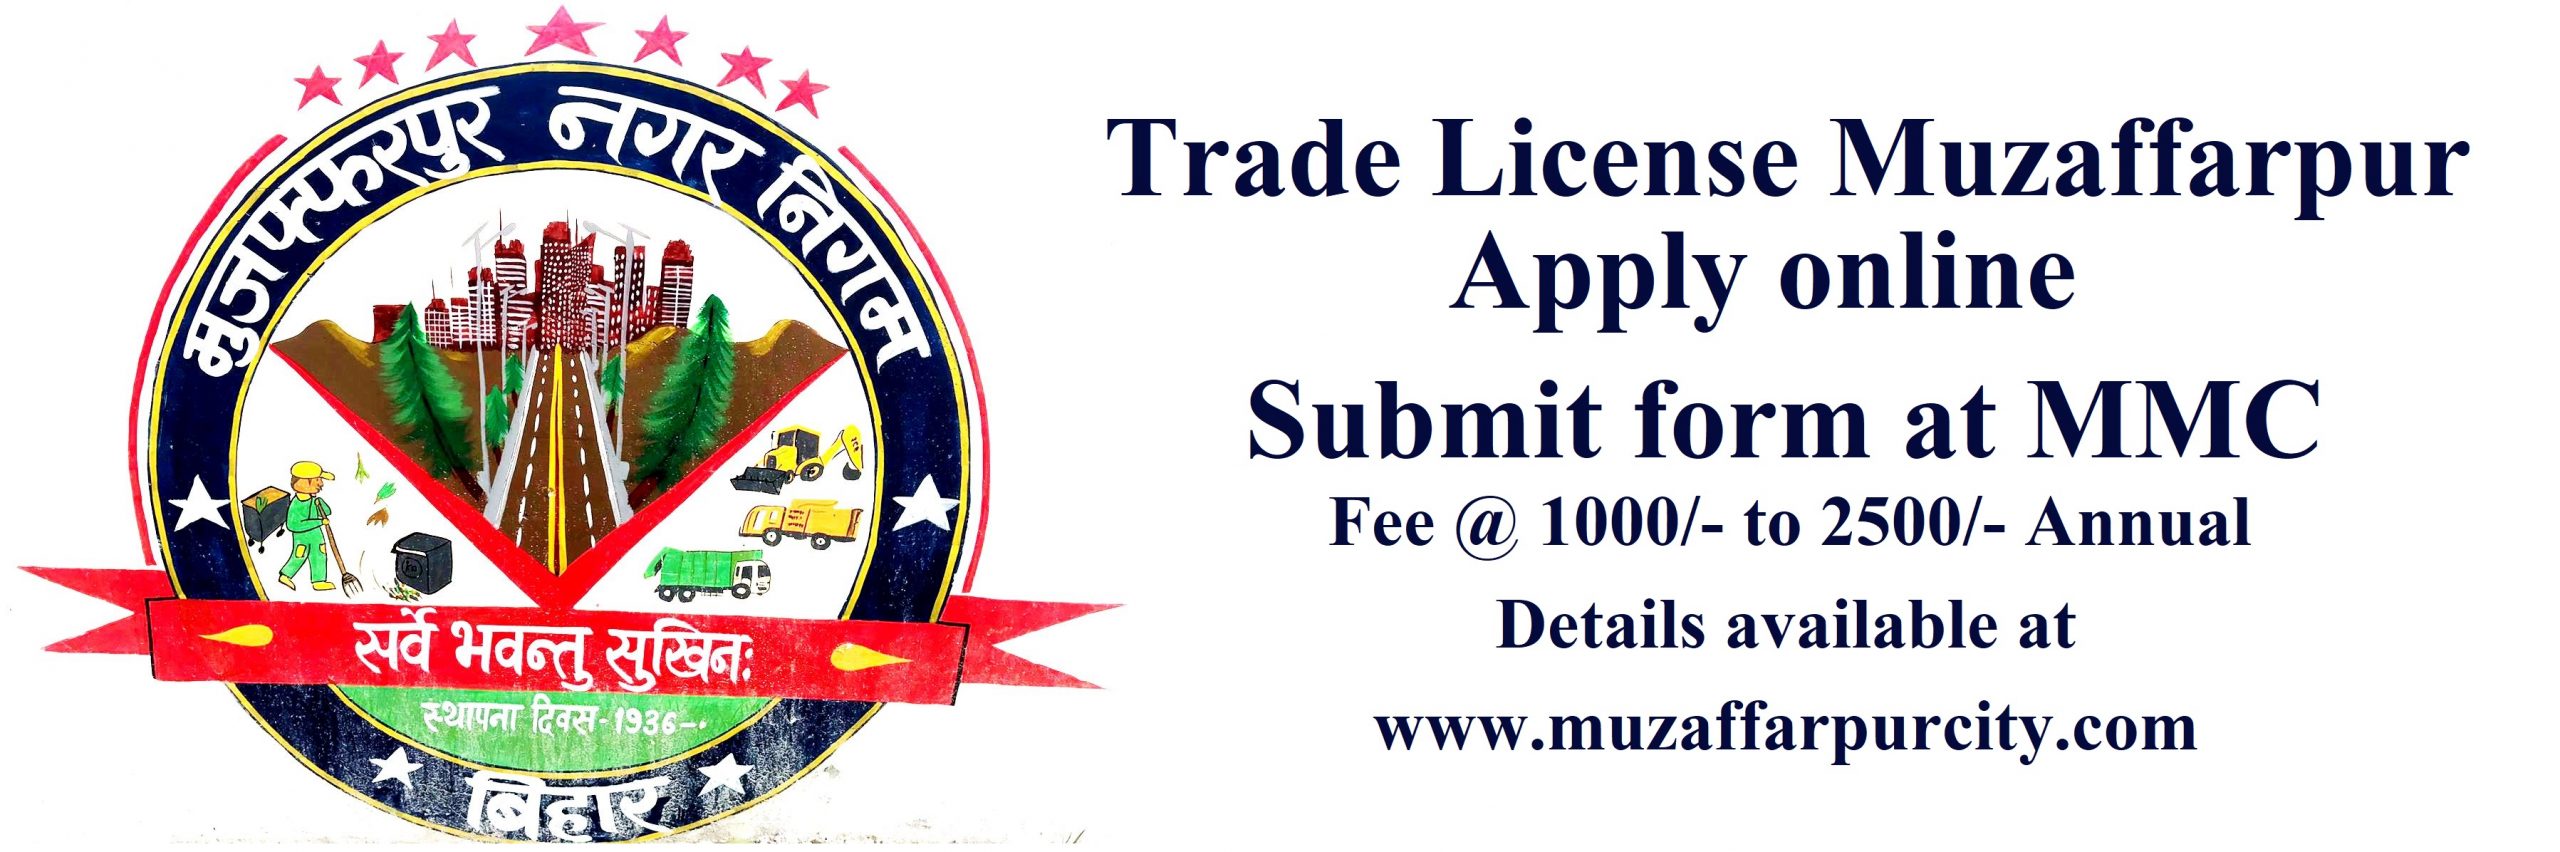 Trade License Form Muzaffarpur Nagar Nigam Fee Payment and Process